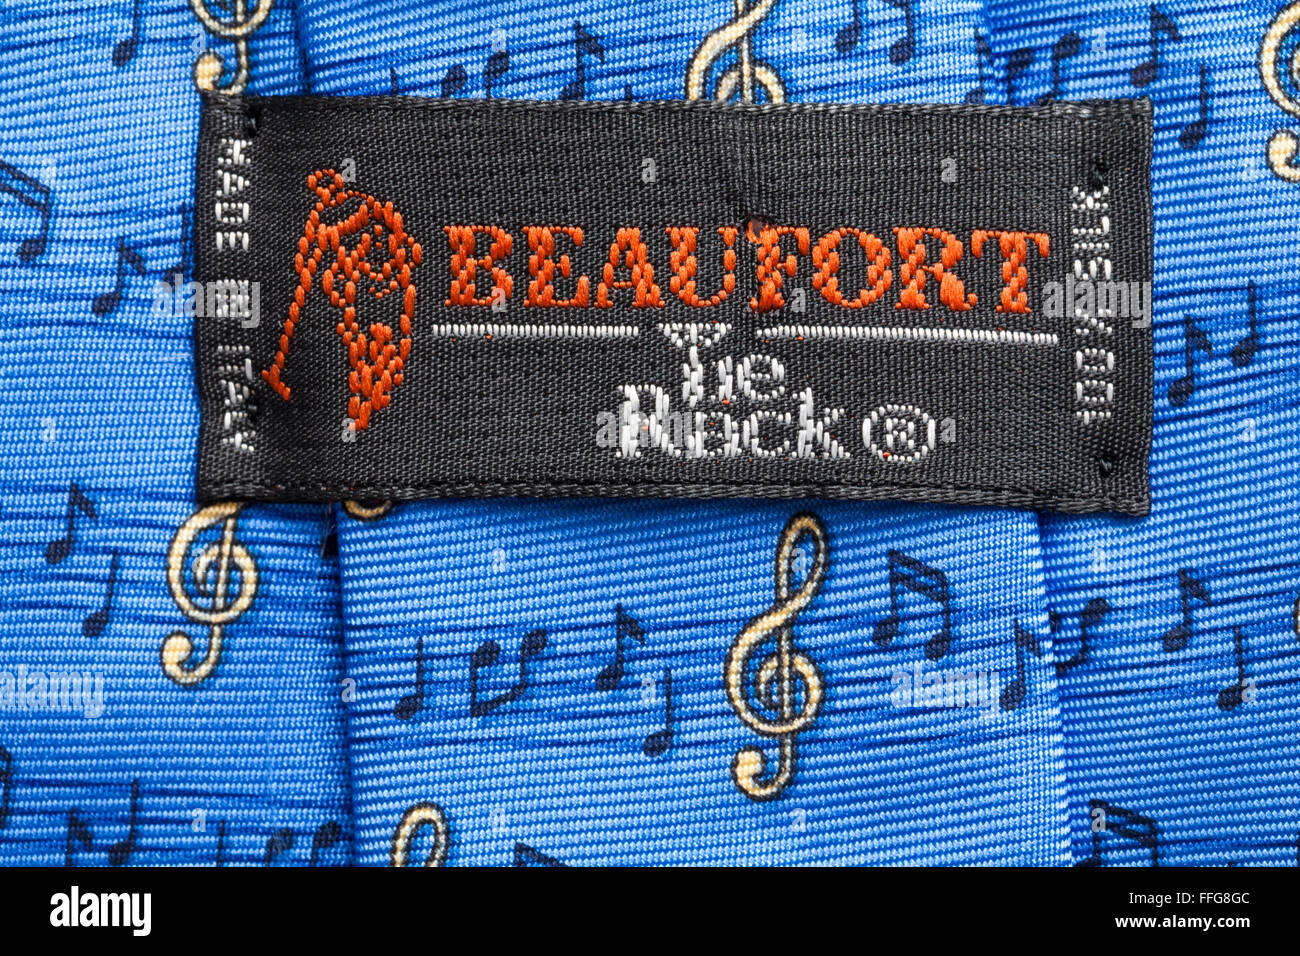 À Beaufort label Tie Rack bleu nouveauté 100 % soie Cravate musicale  fabriqué en Italie - vendu au Royaume-Uni Royaume-Uni, Grande Bretagne  Photo Stock - Alamy